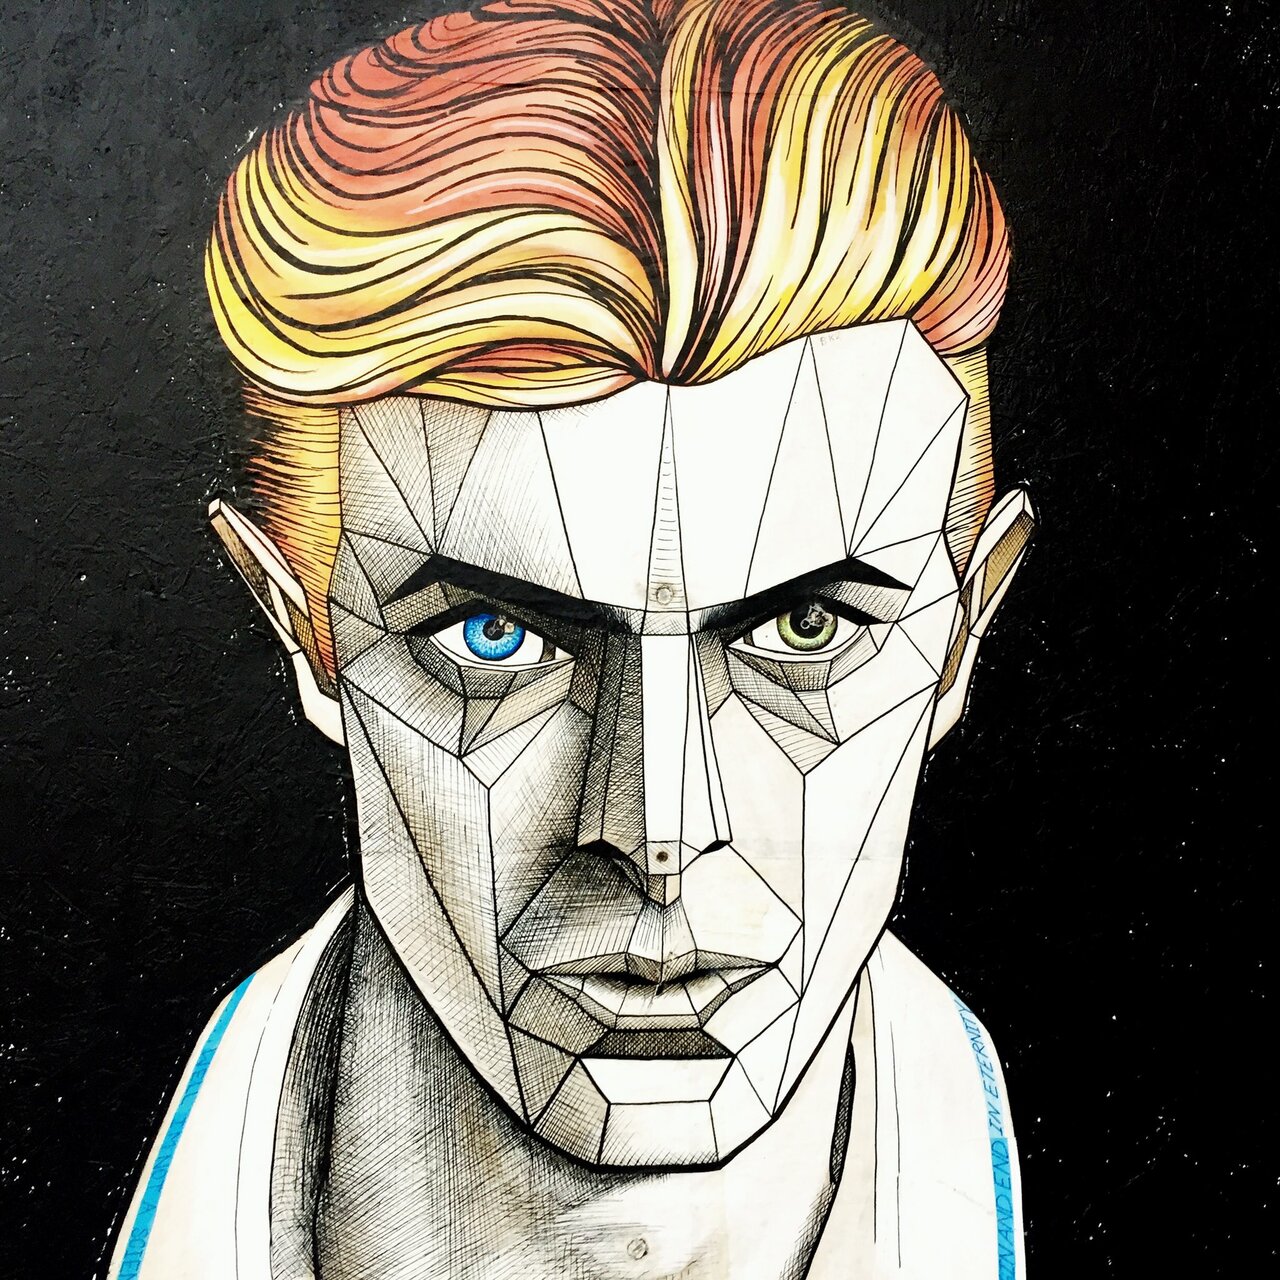 Loving this mural of David Bowie in Birmingham. #DavidBowie #bowie #streetart https://t.co/gGvN6CilcJ